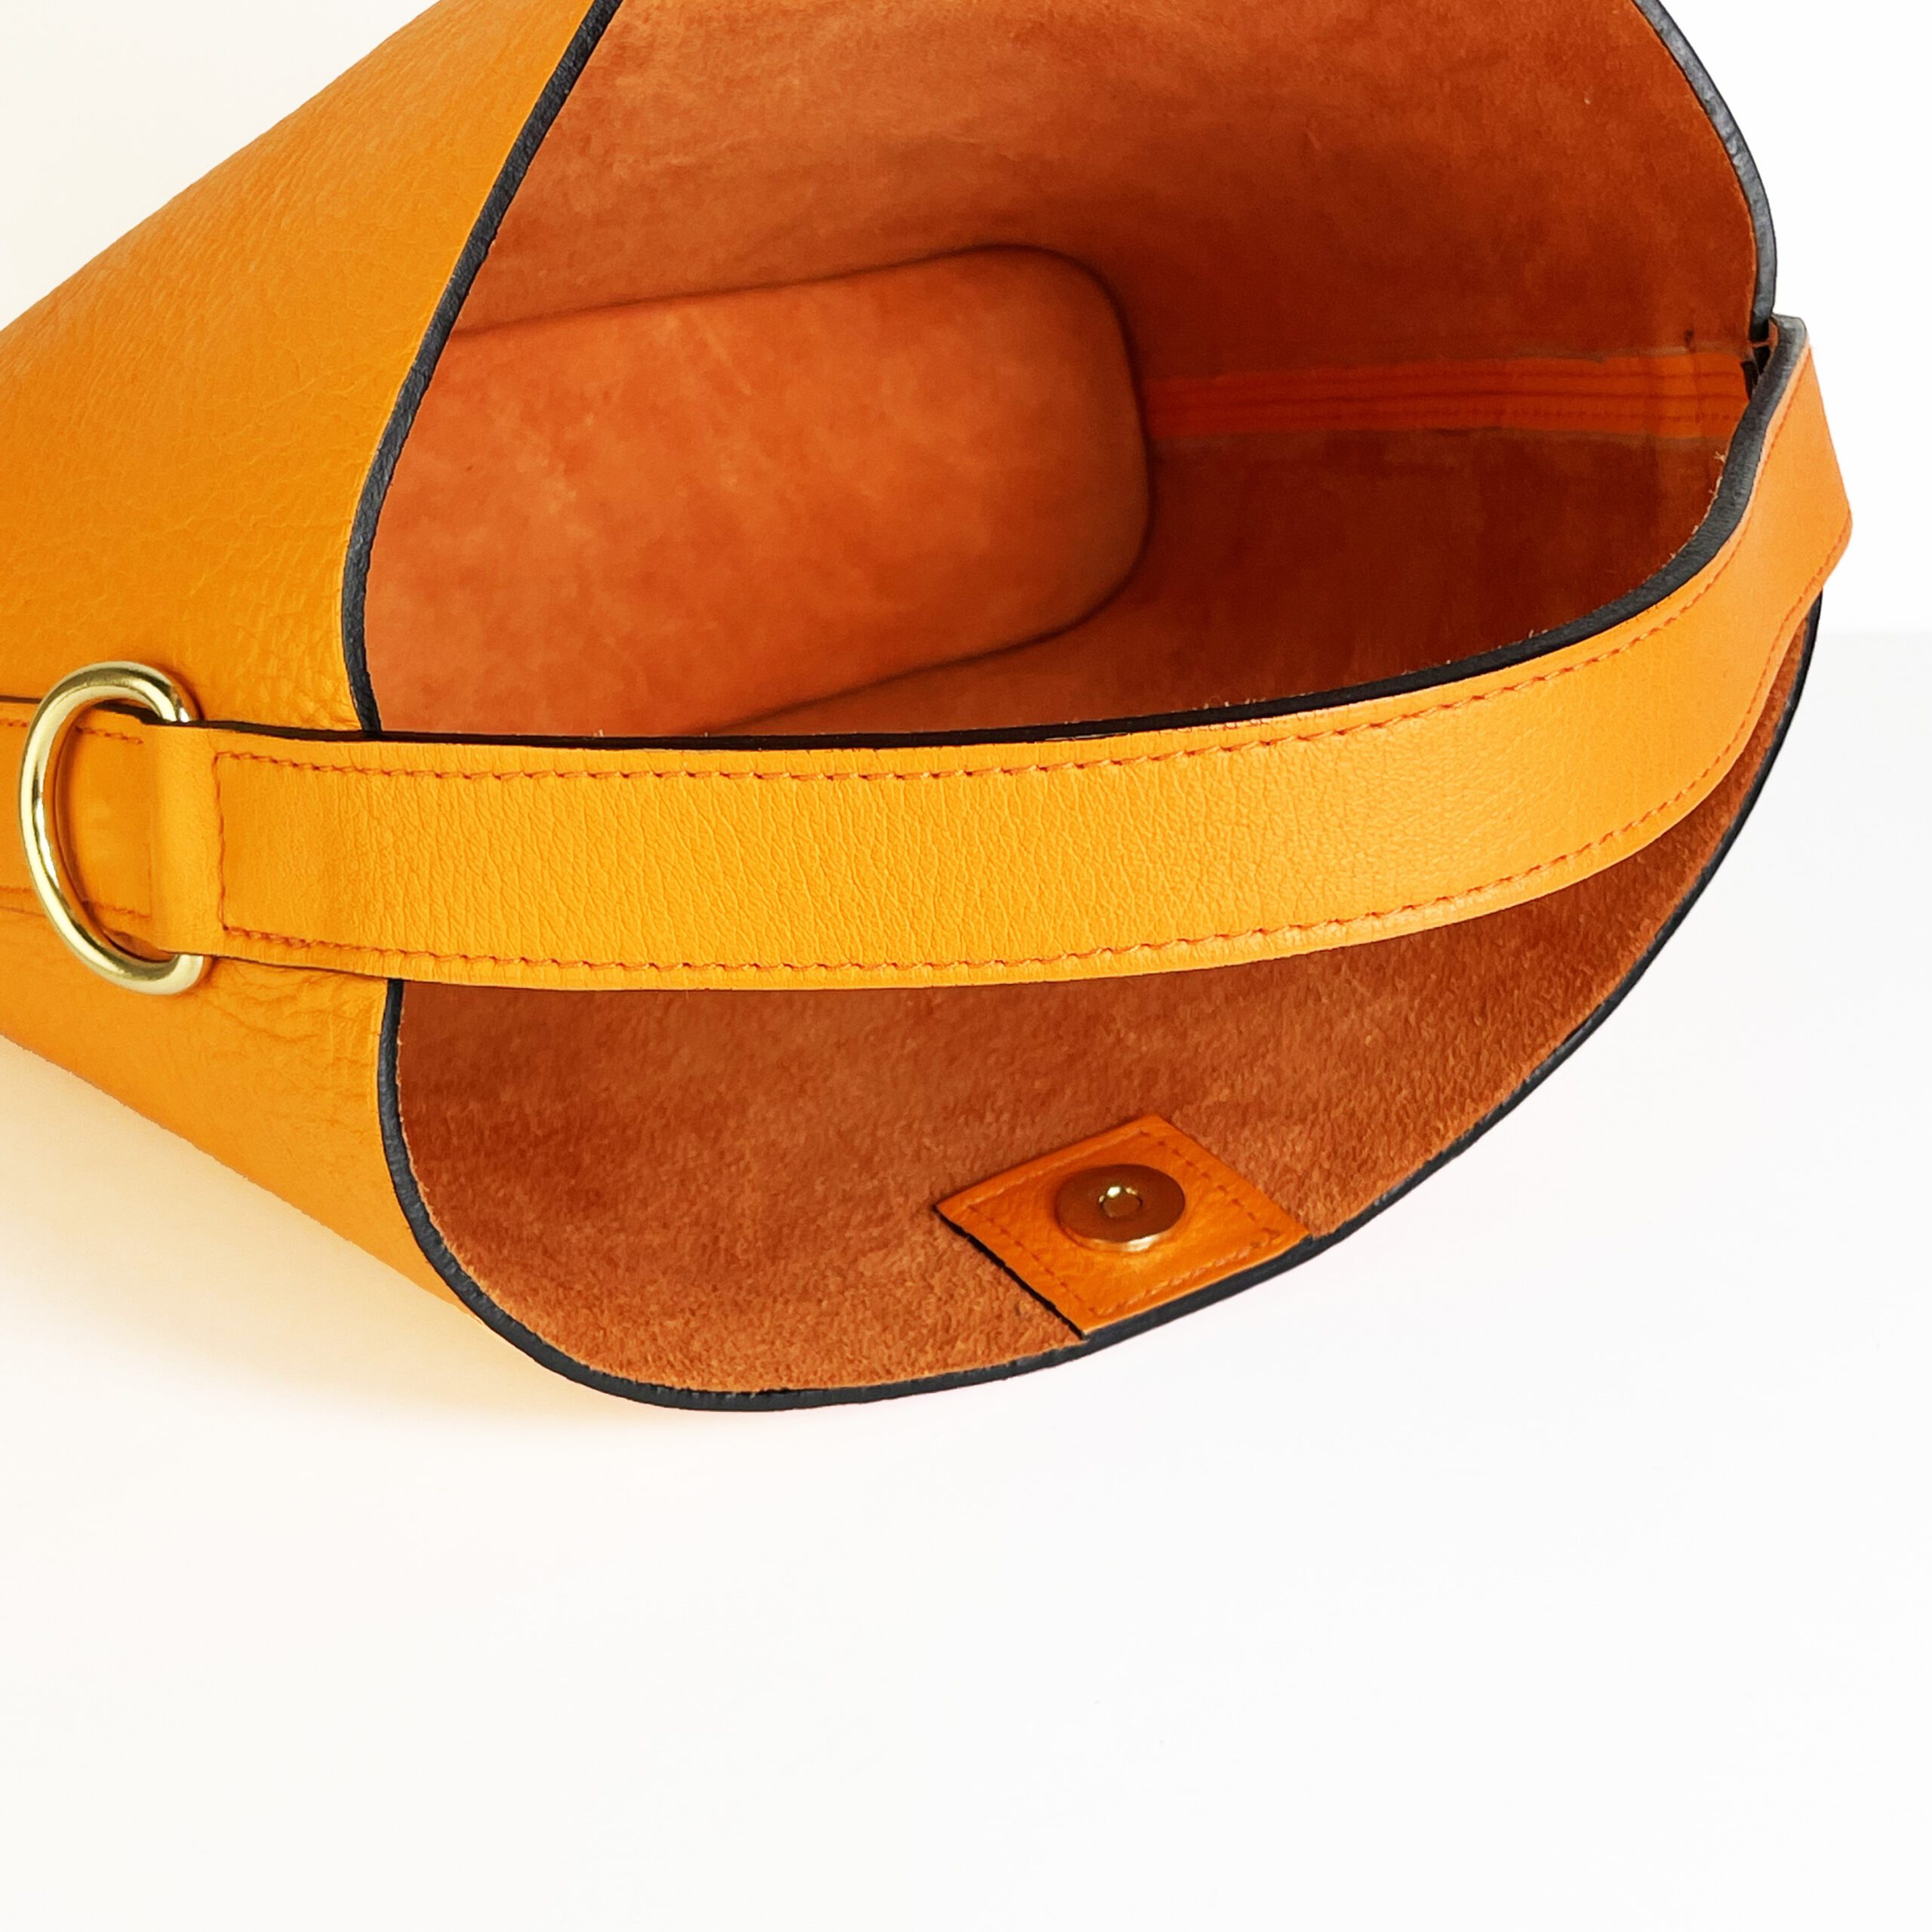 #Octave sac en cuir orange pleine fleur avec poignée et bandoulière amovible